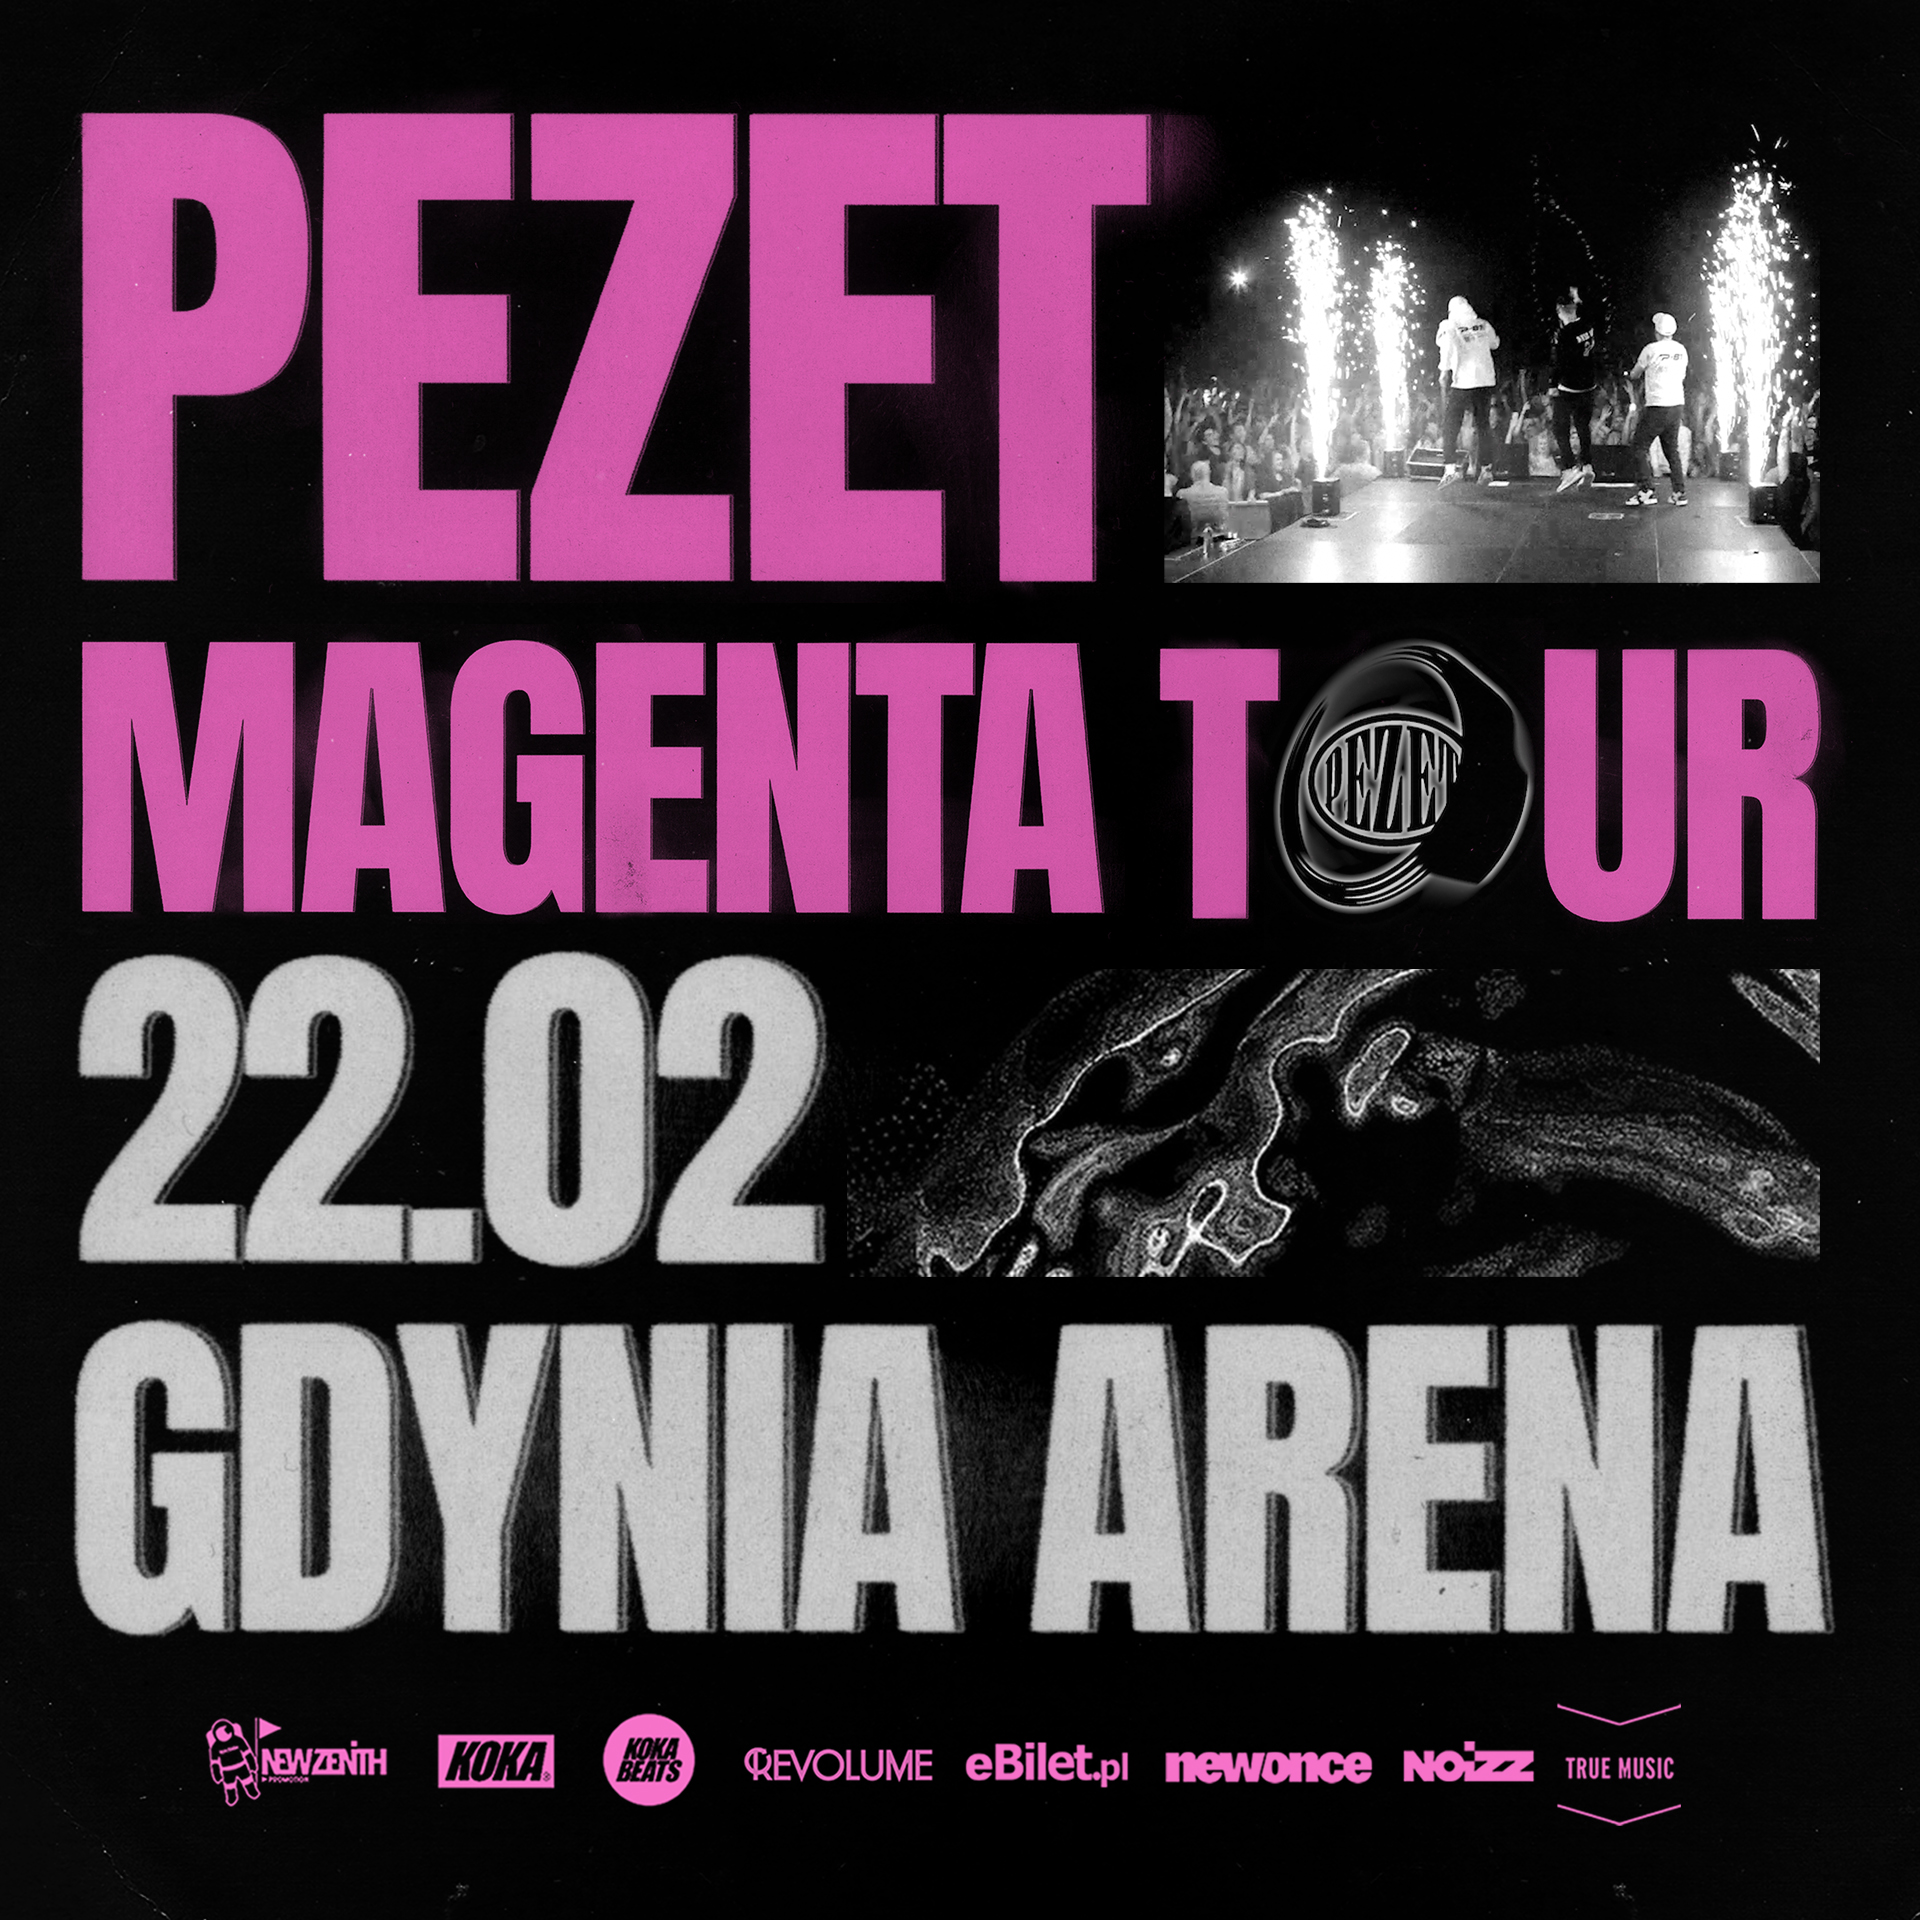 PEZET – Magenta Tour – Gdynia